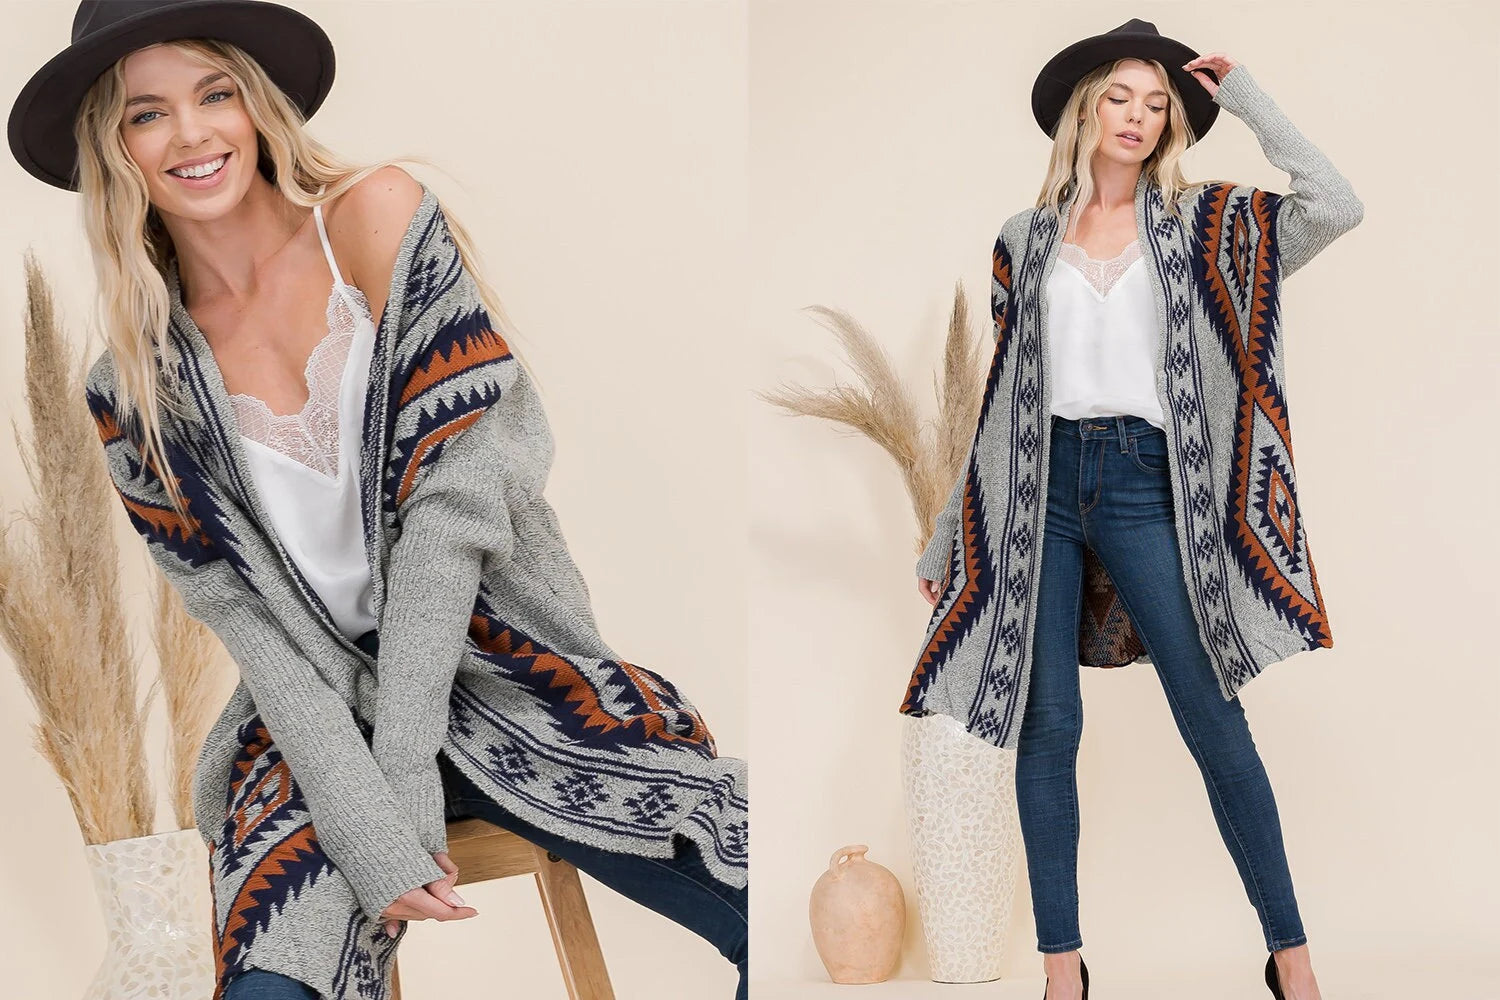 Aztec Pattern Knit Women Cardigan Jacket